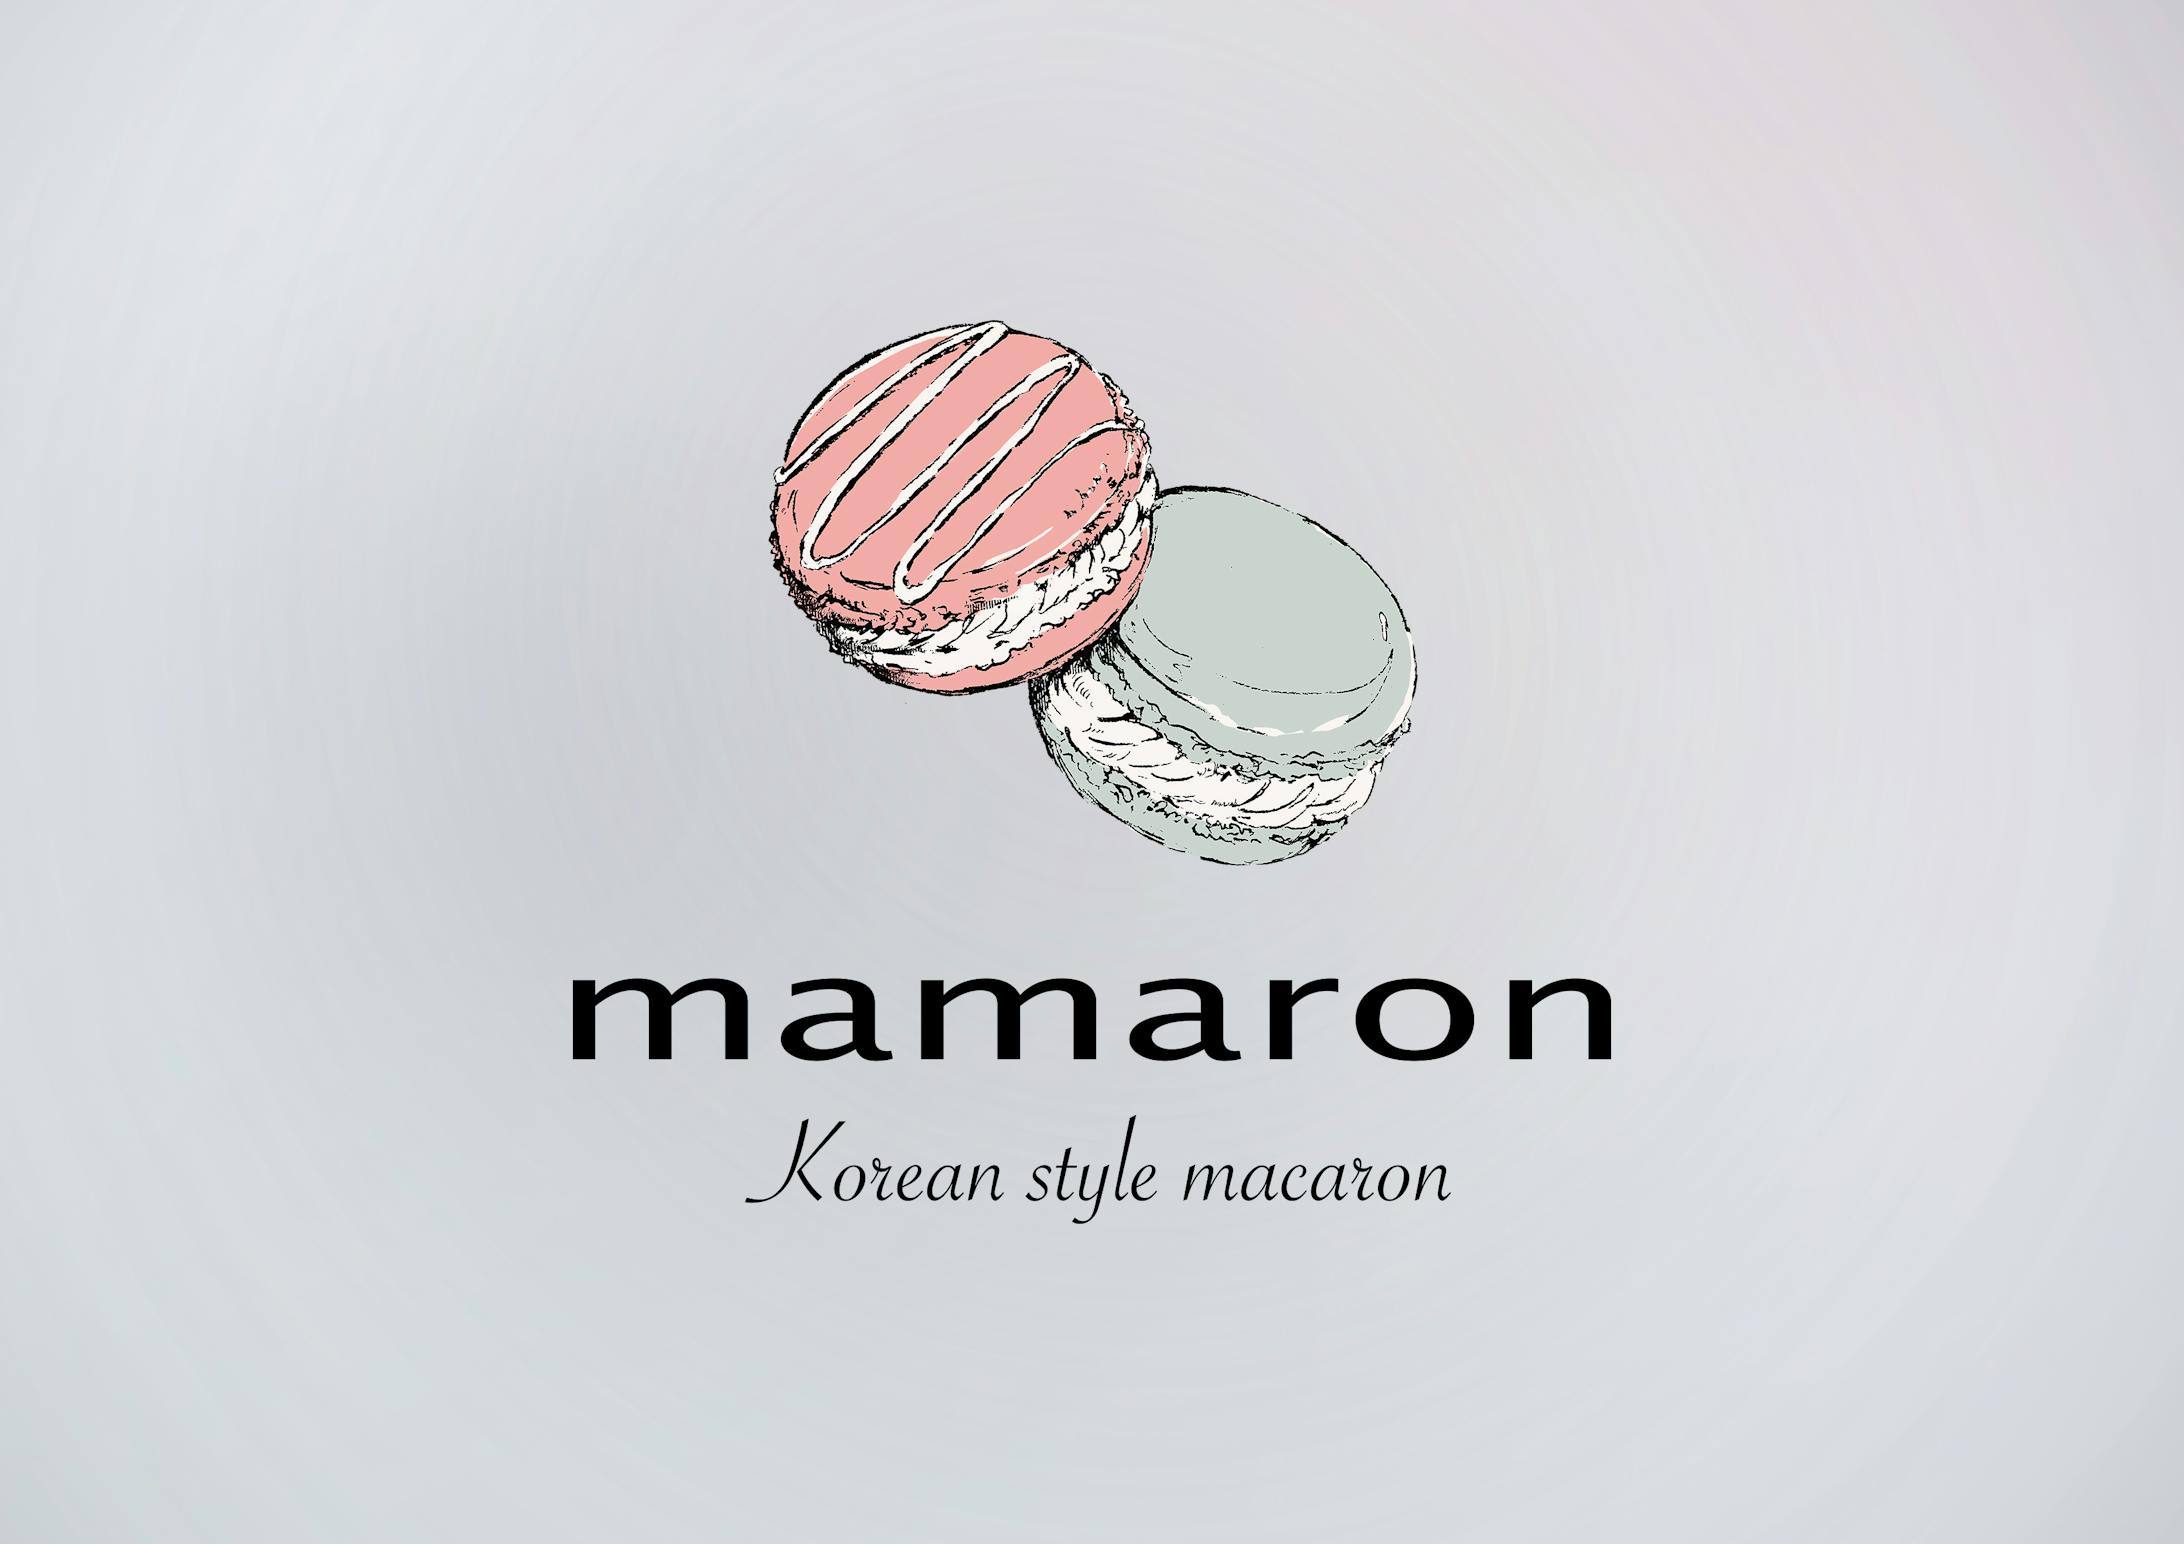 マカロン専門店mamaron イラストロゴ